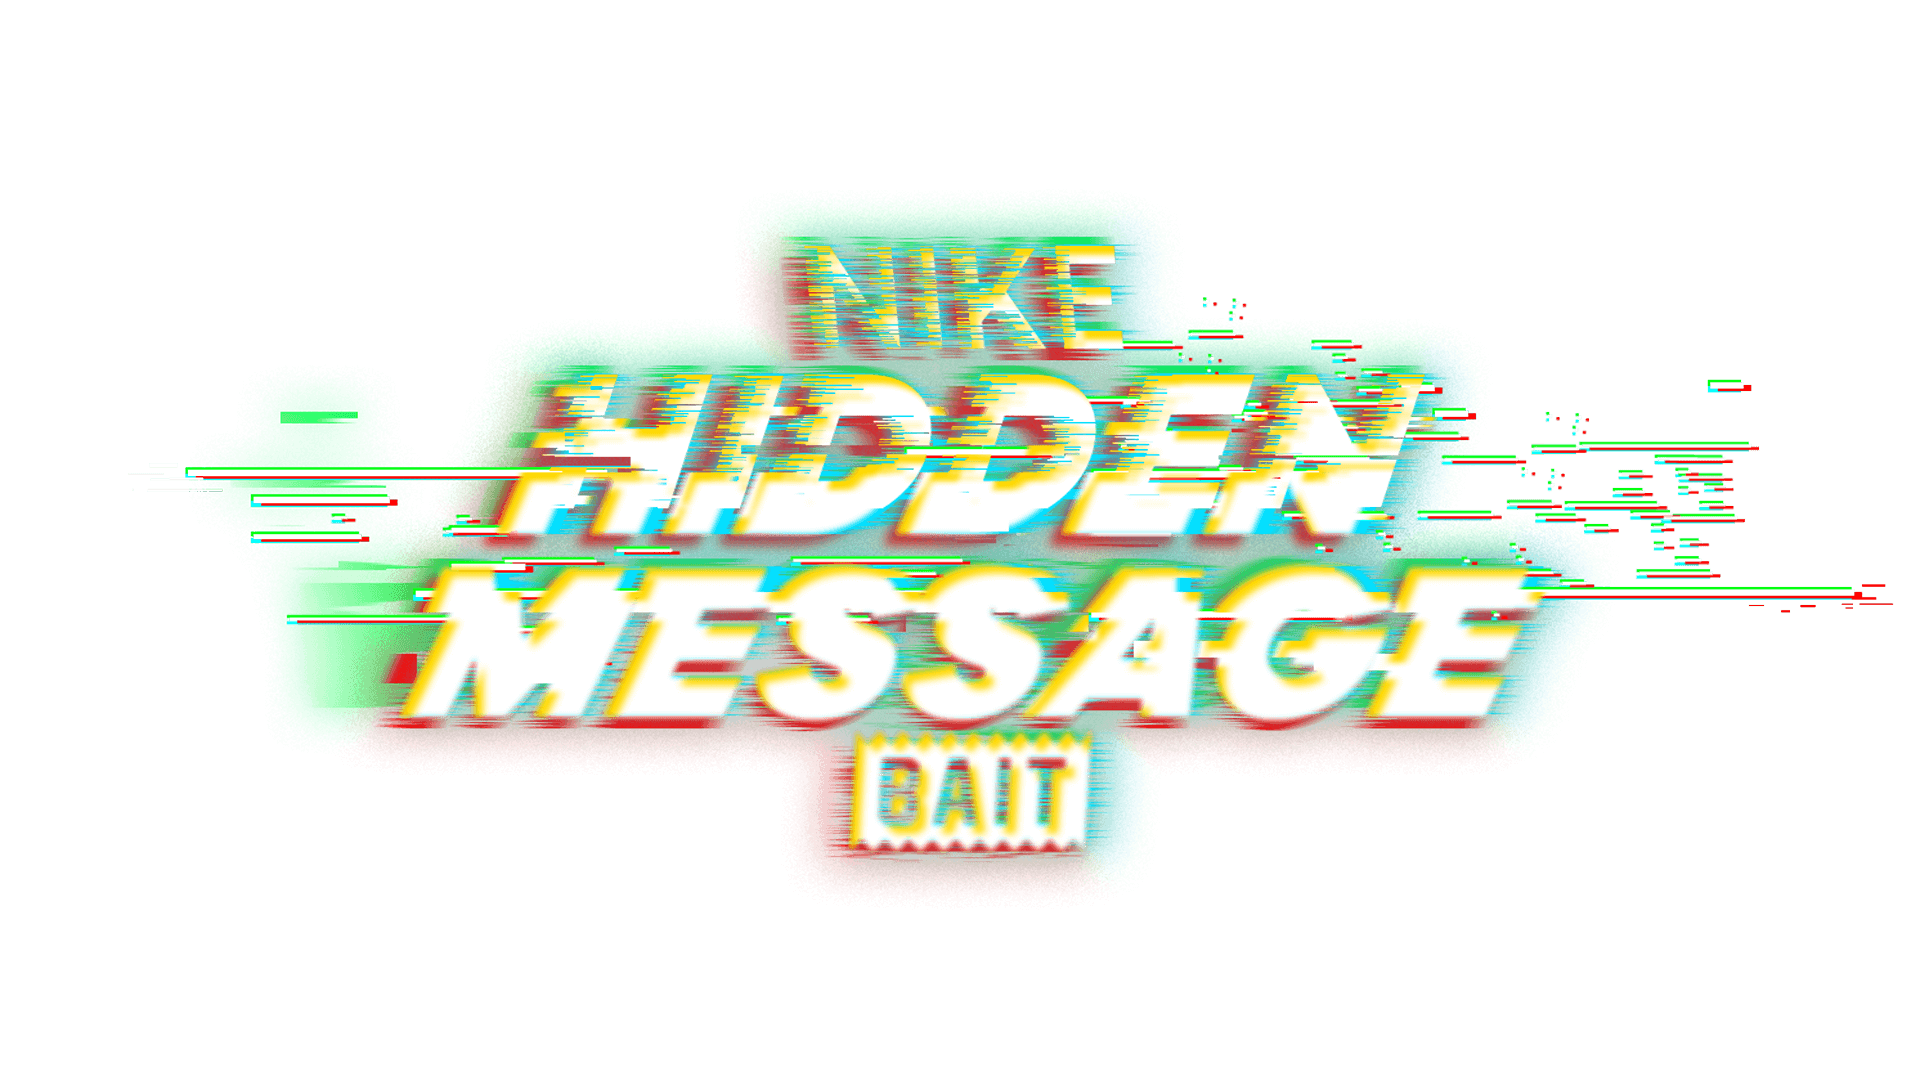 THE HIDDEN MESSAGE